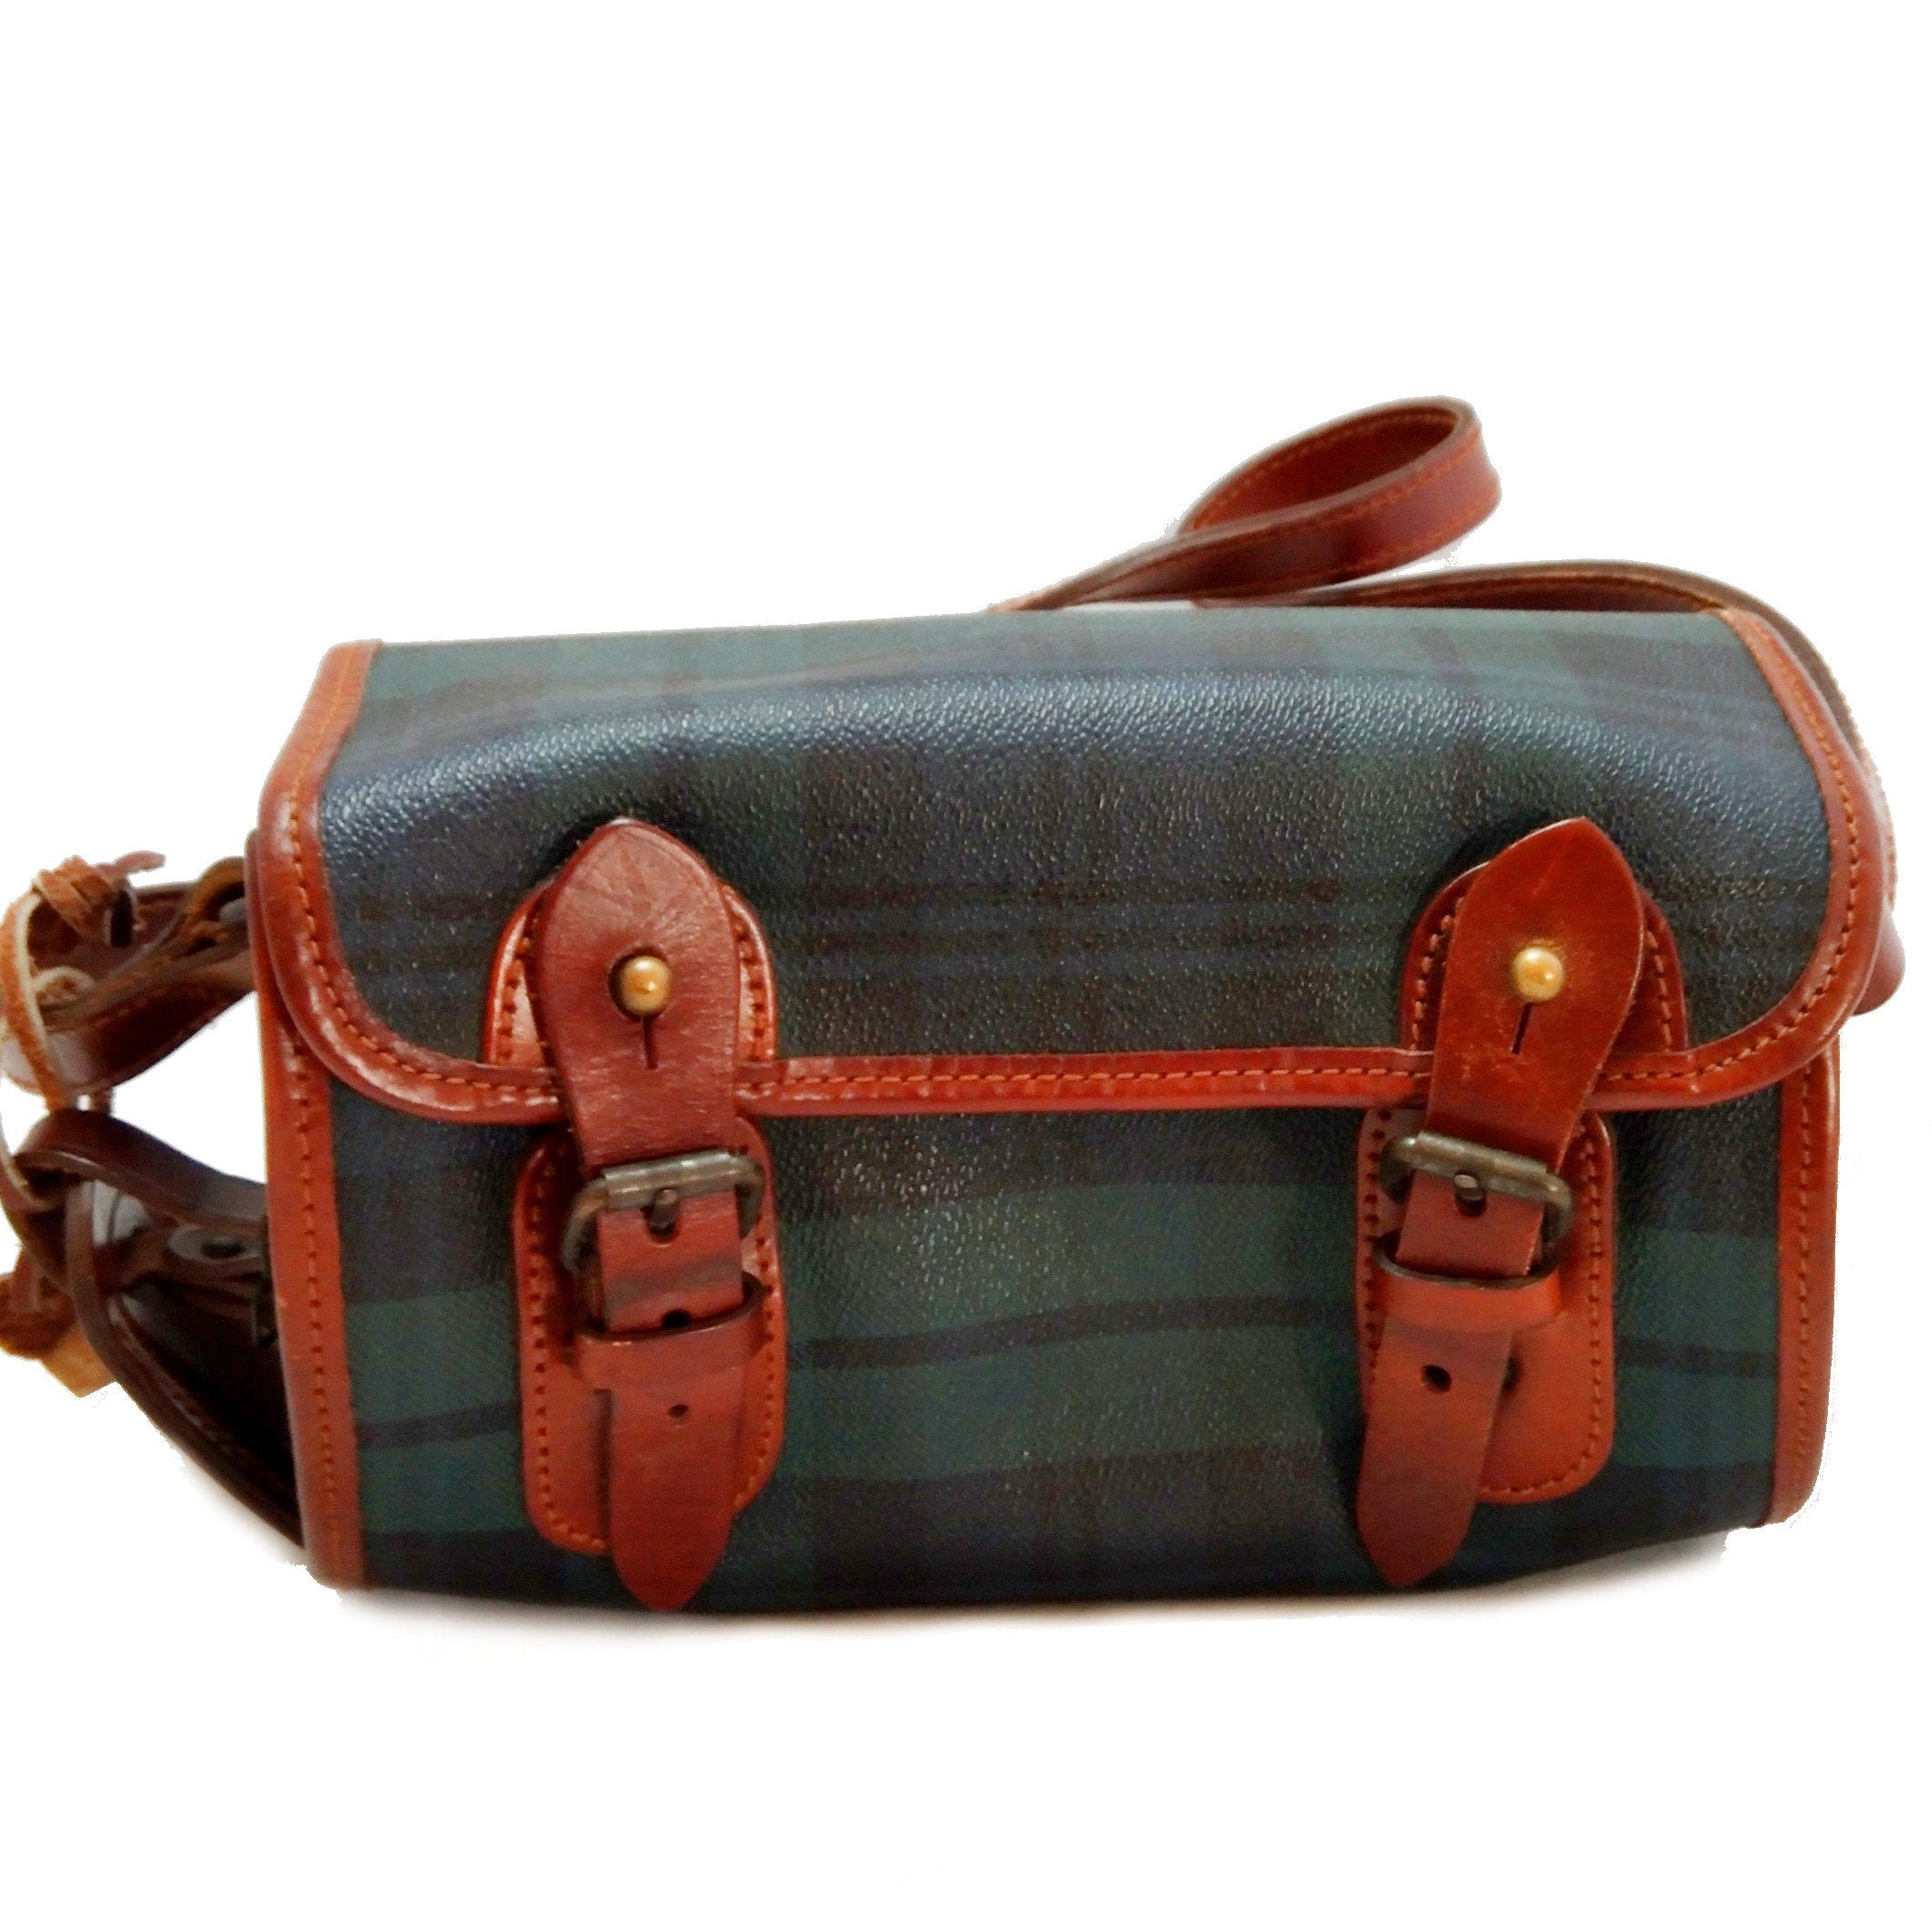 Polo Ralph Lauren Handbags - Buy Polo Ralph Lauren Handbags online in India